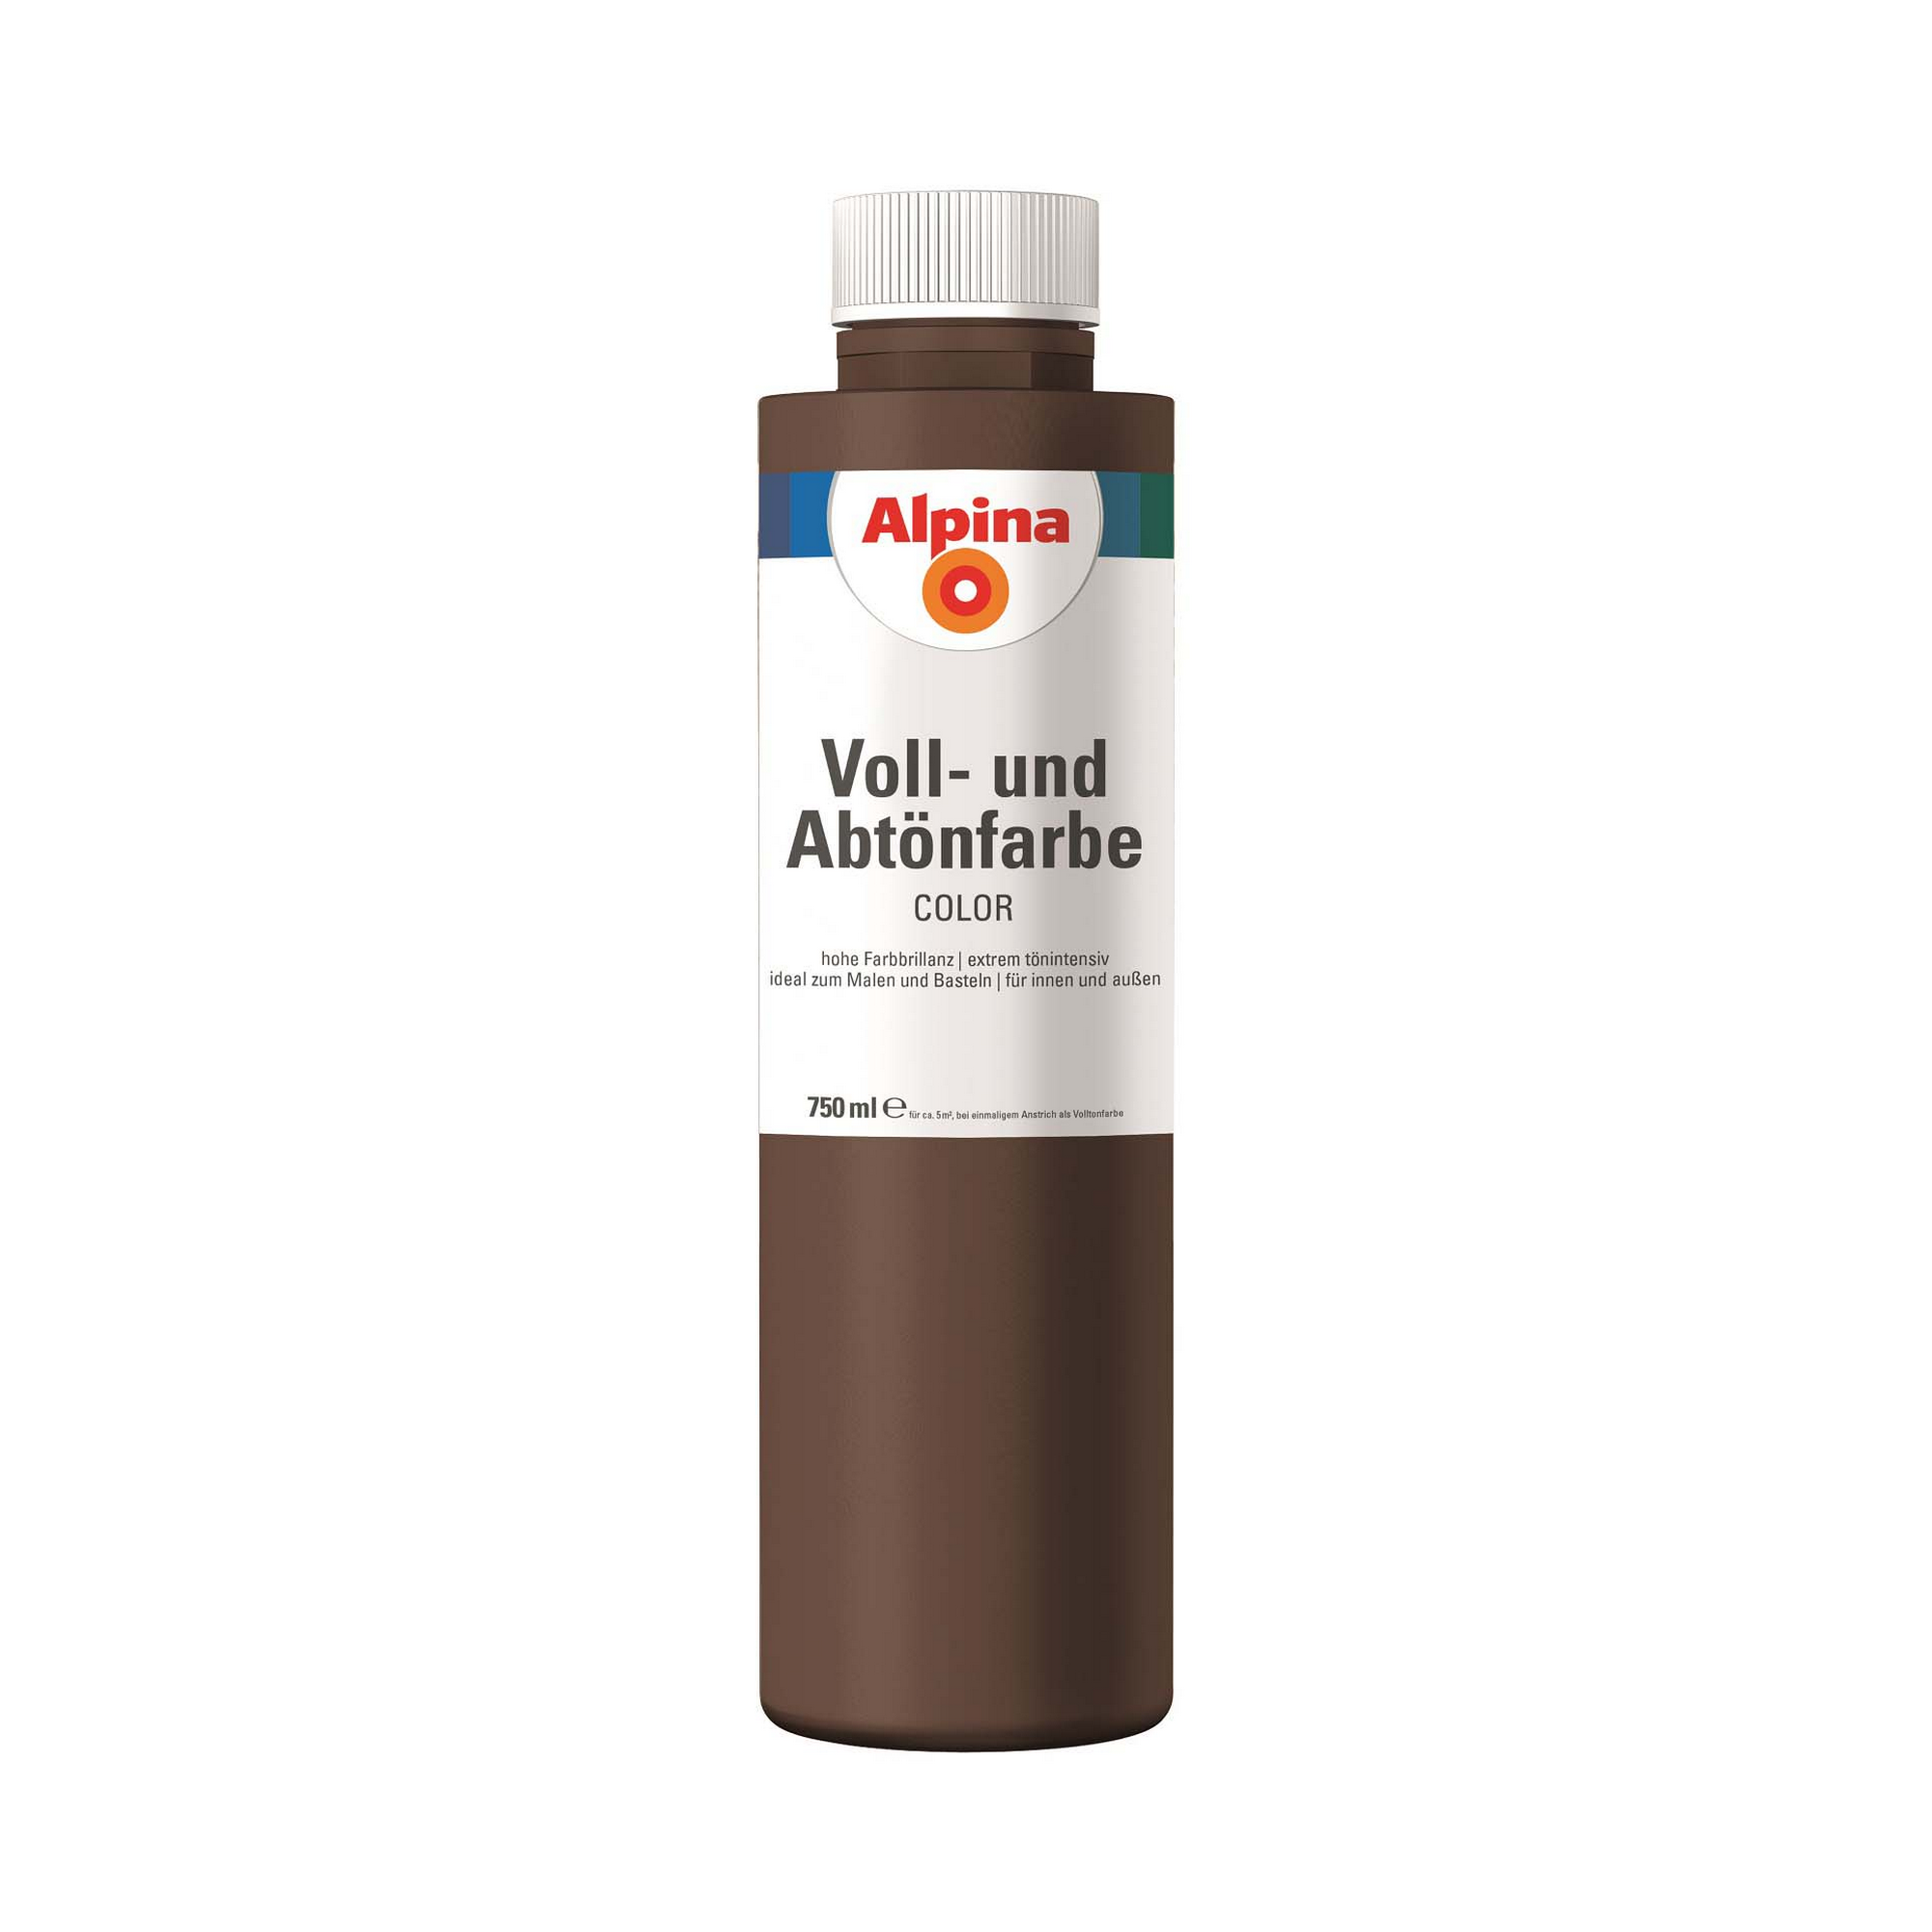 Voll- und Abtönfarbe 'Choco Brown' schokobraun 750 ml + product picture